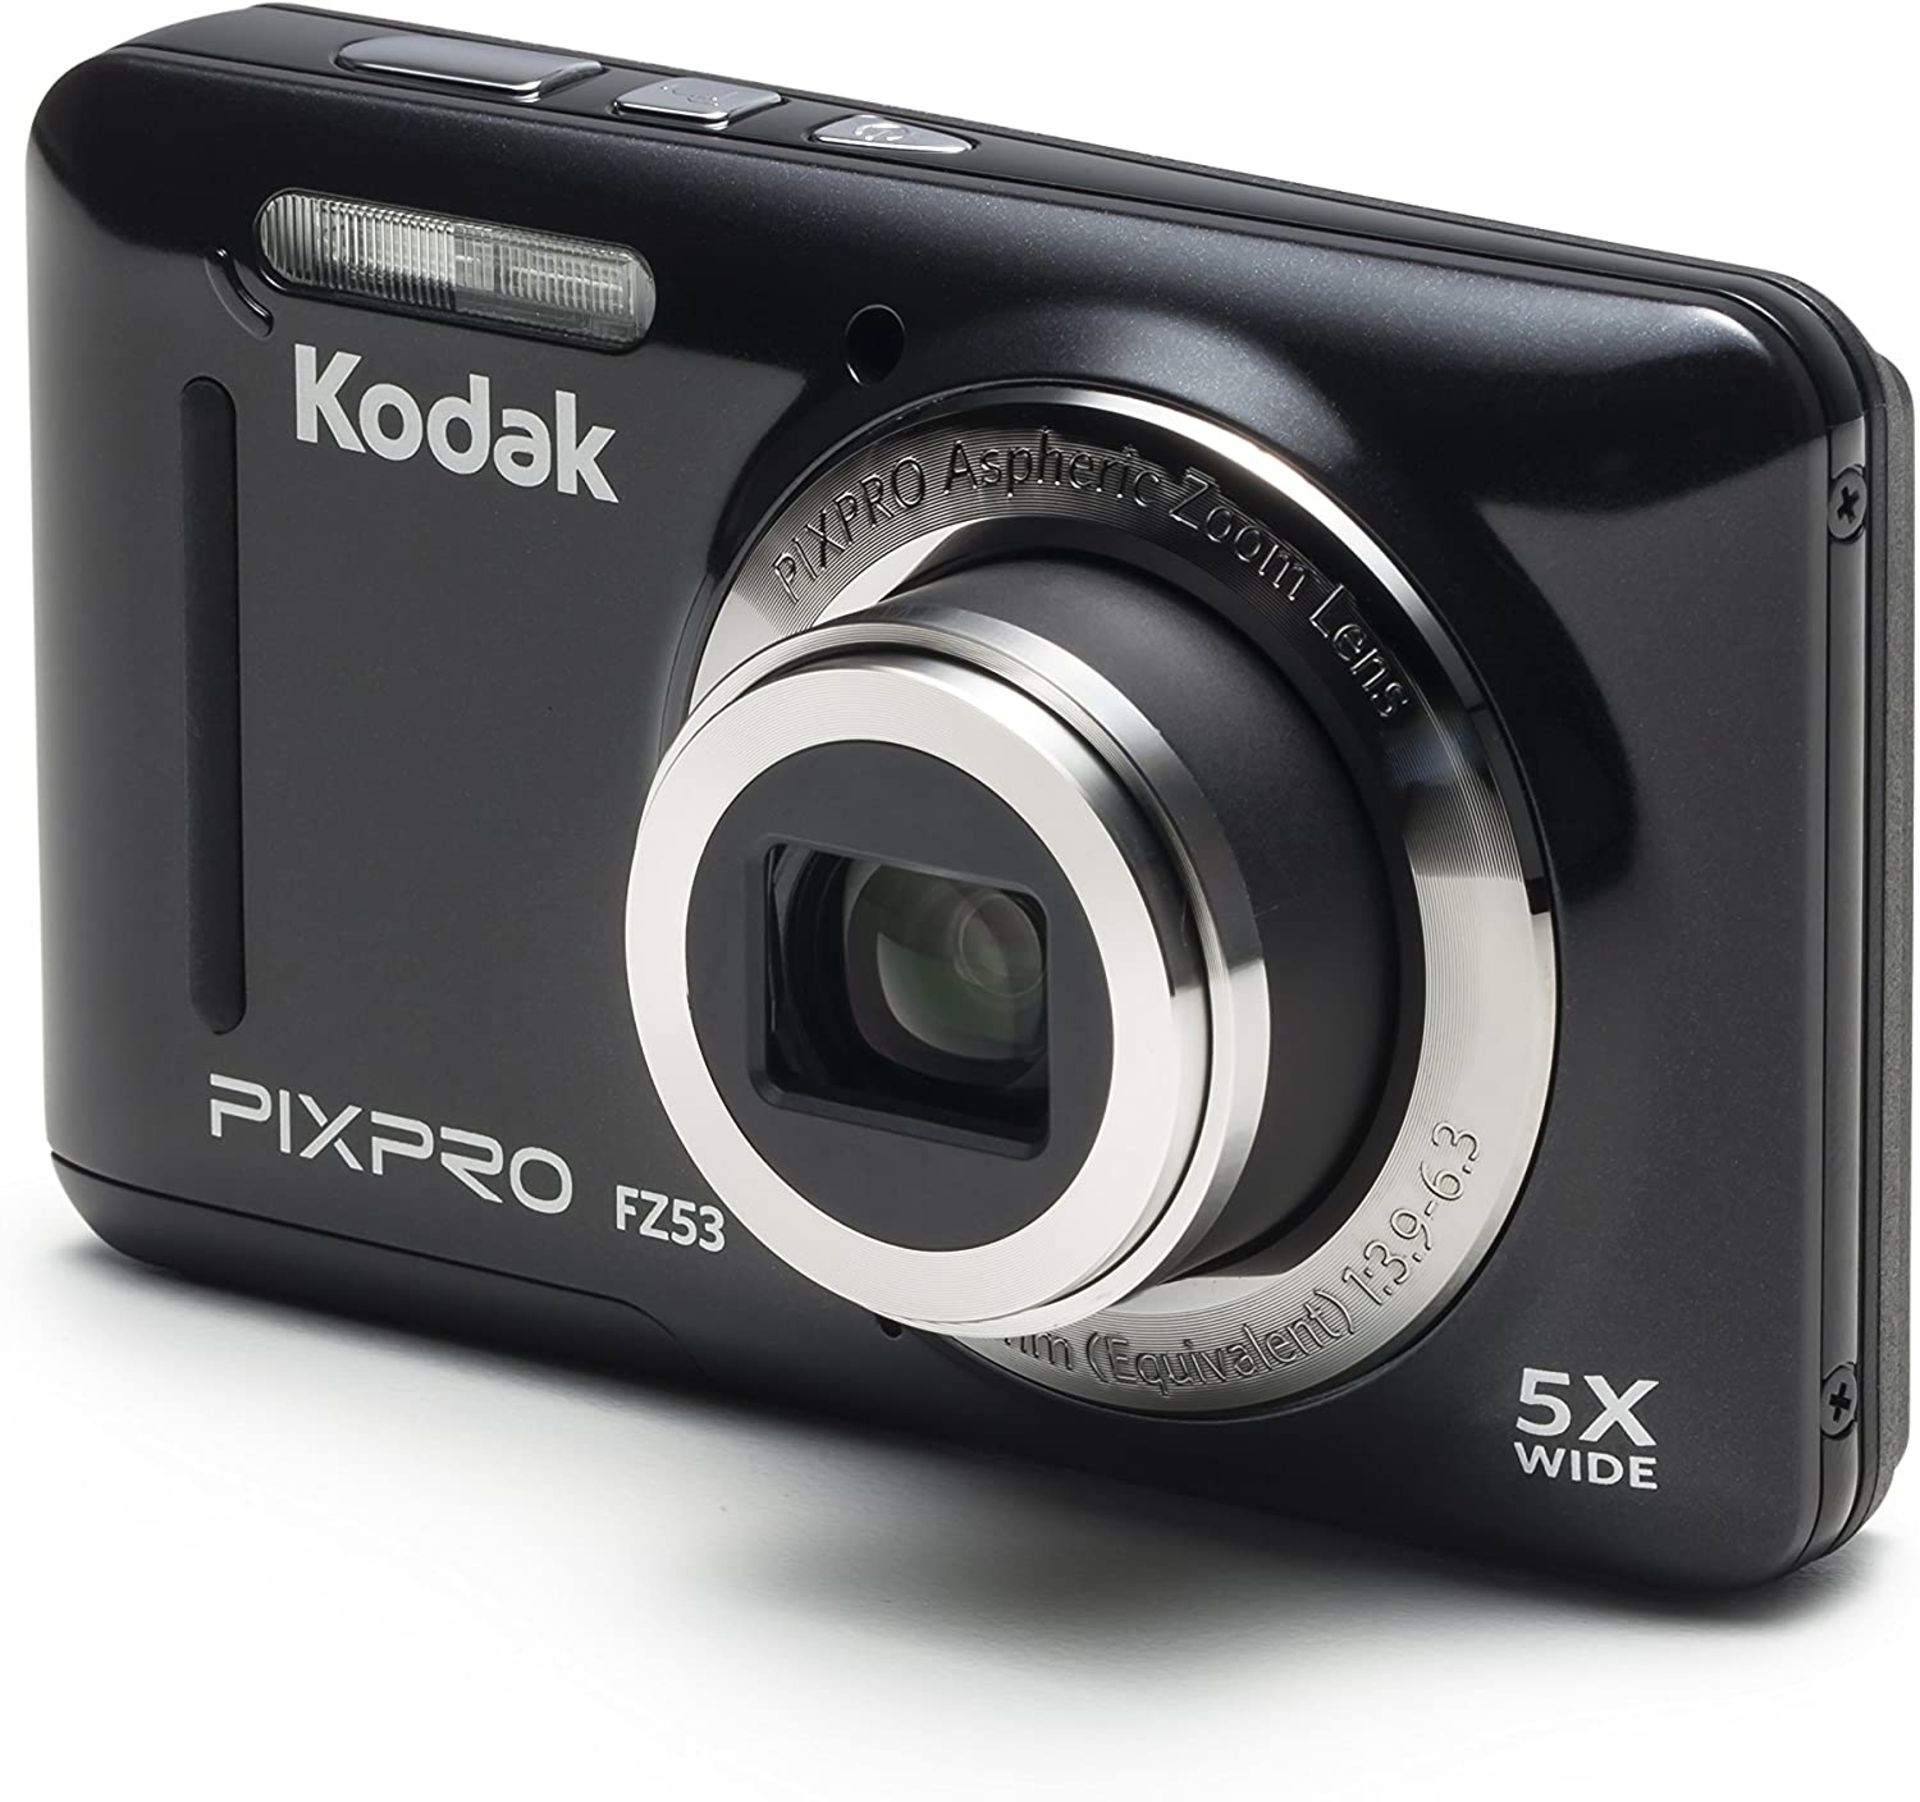 (42) 1 x Grade B - KODAK FZ53 Digital Camera - Black (16 MP, 5xZoom, 28 mm Wide, Li Ion Battery... - Image 3 of 3